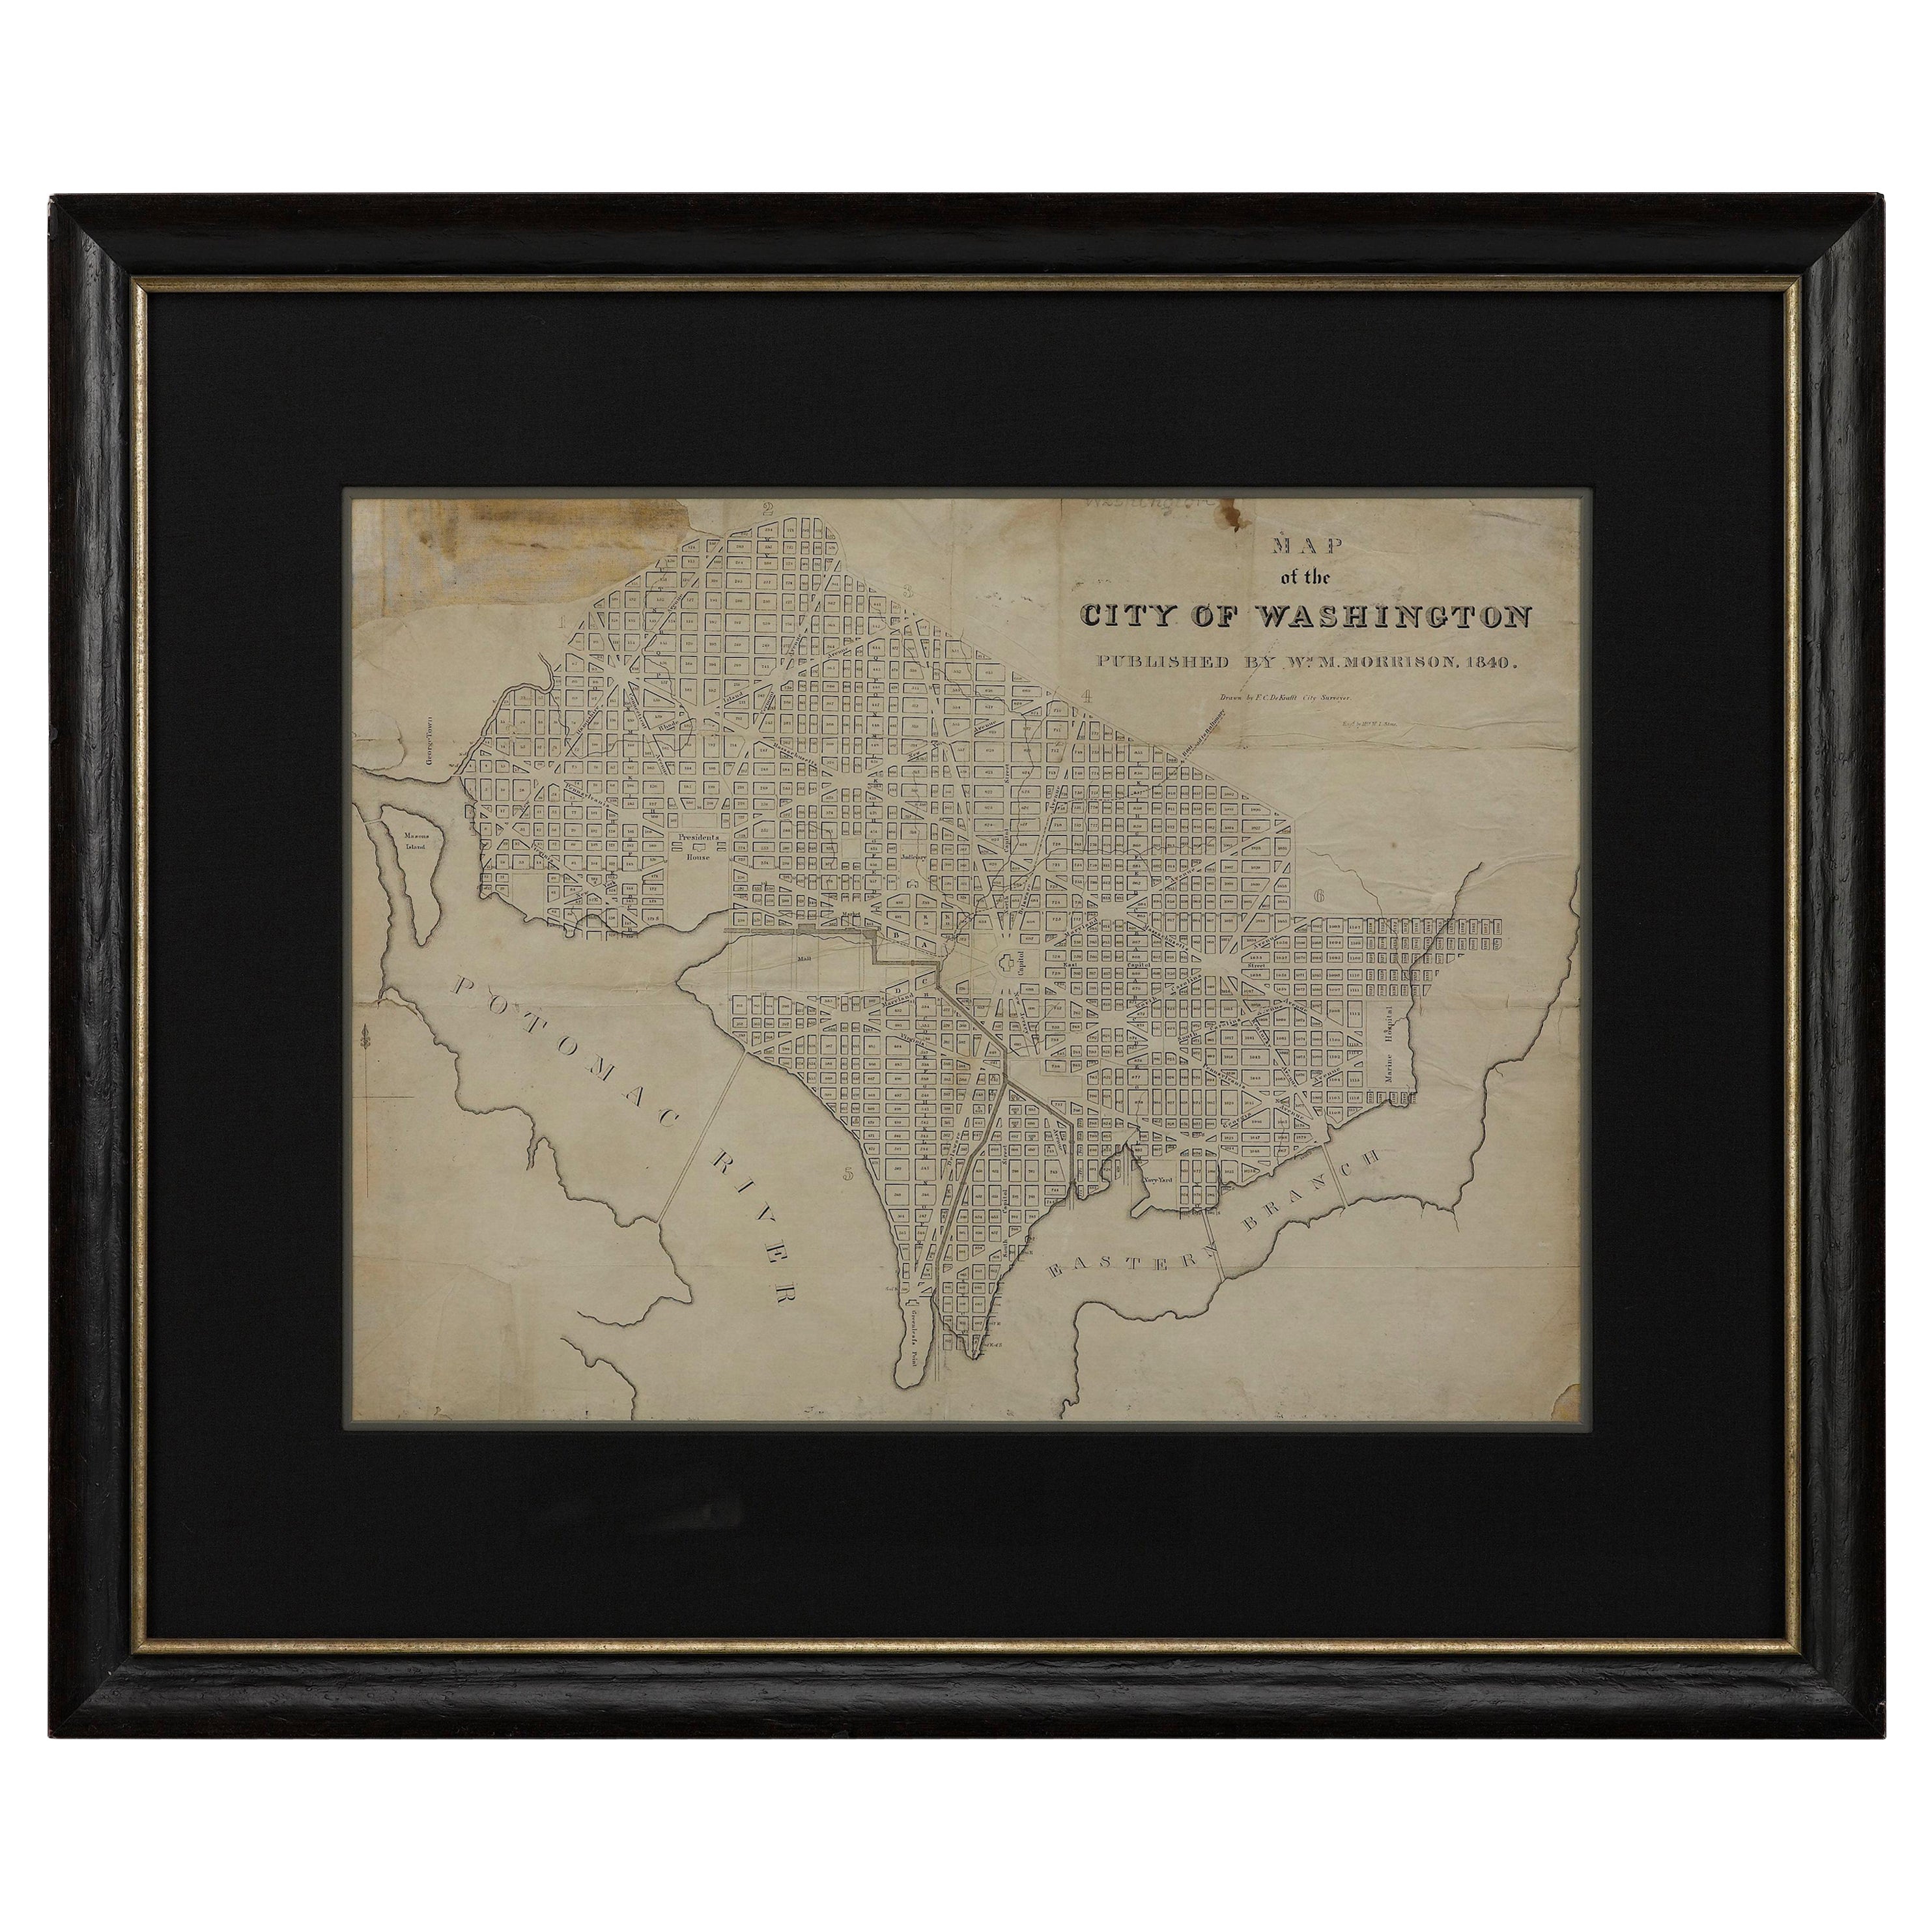 Map of the City of Washington aus dem Jahr 1840, herausgegeben von William M. Morrison